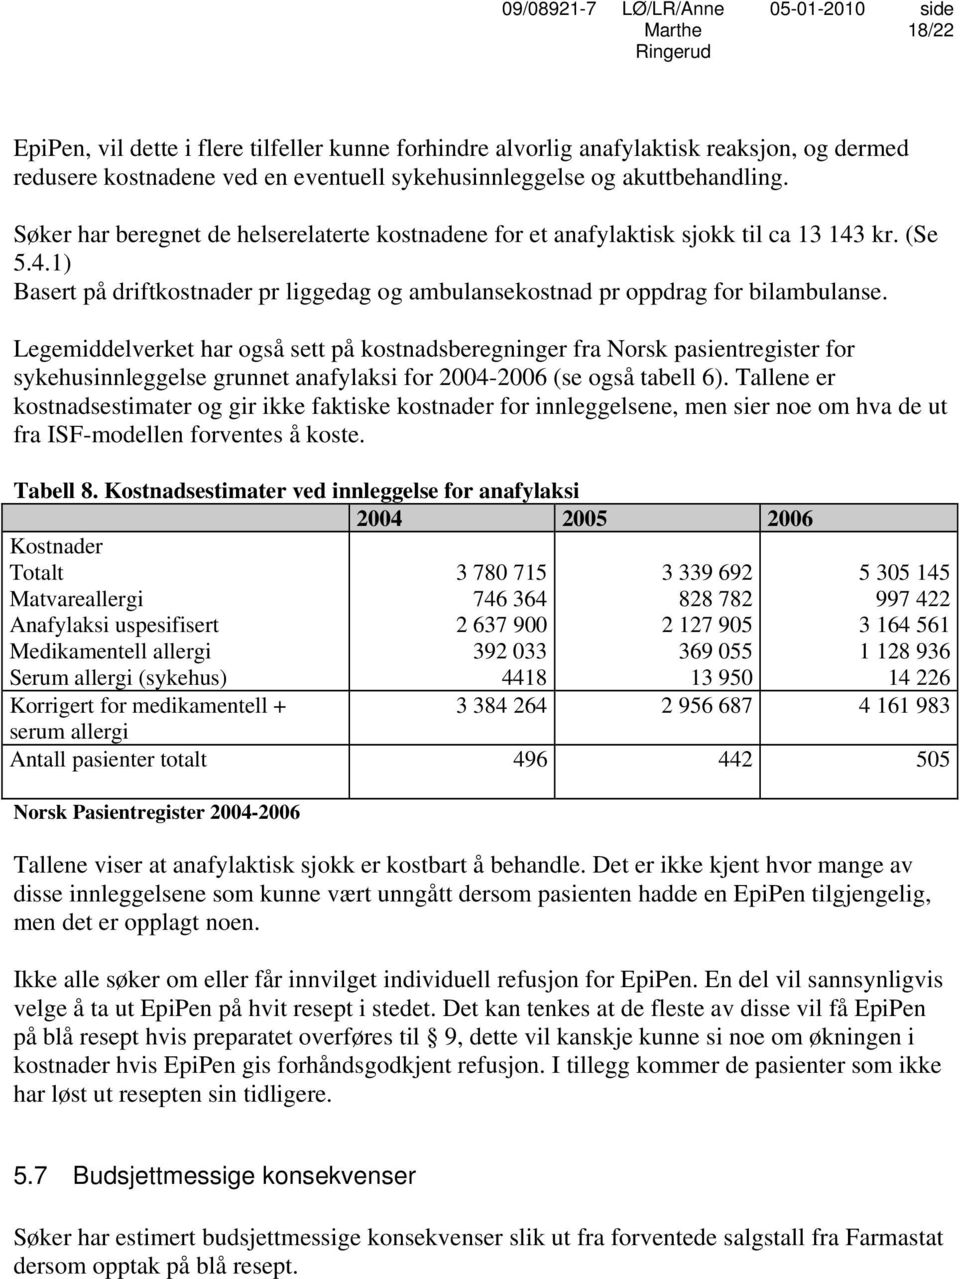 Legemiddelverket har også sett på kostnadsberegninger fra Norsk pasientregister for sykehusinnleggelse grunnet anafylaksi for 2004-2006 (se også tabell 6).